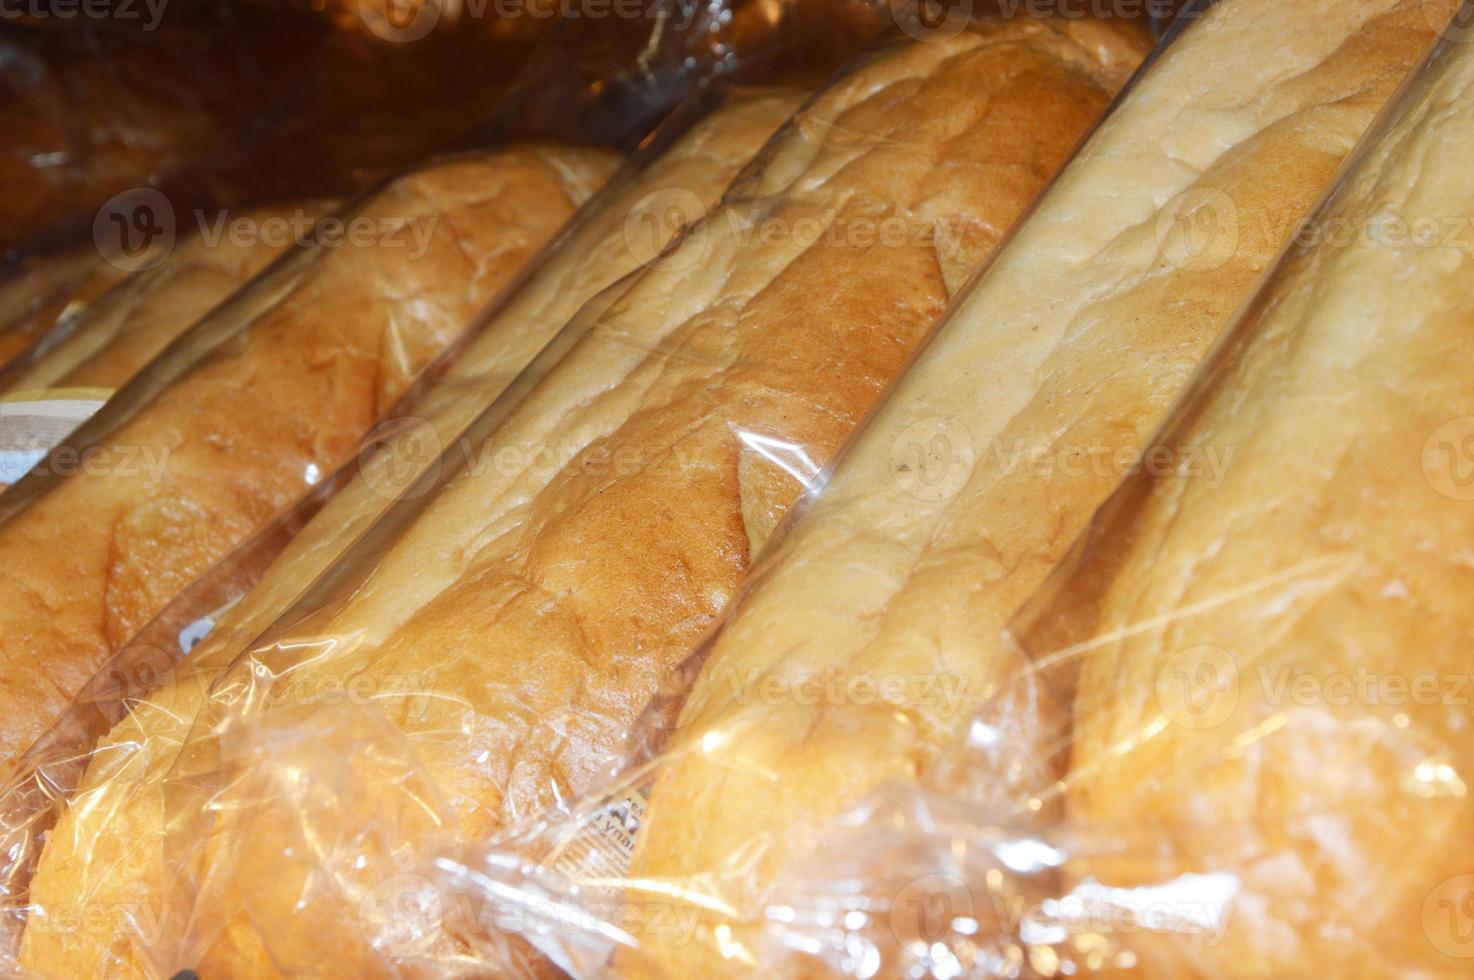 broden wit brood in plastic zakken op de toonbank van de winkel, verpakt voor verkoop. foto